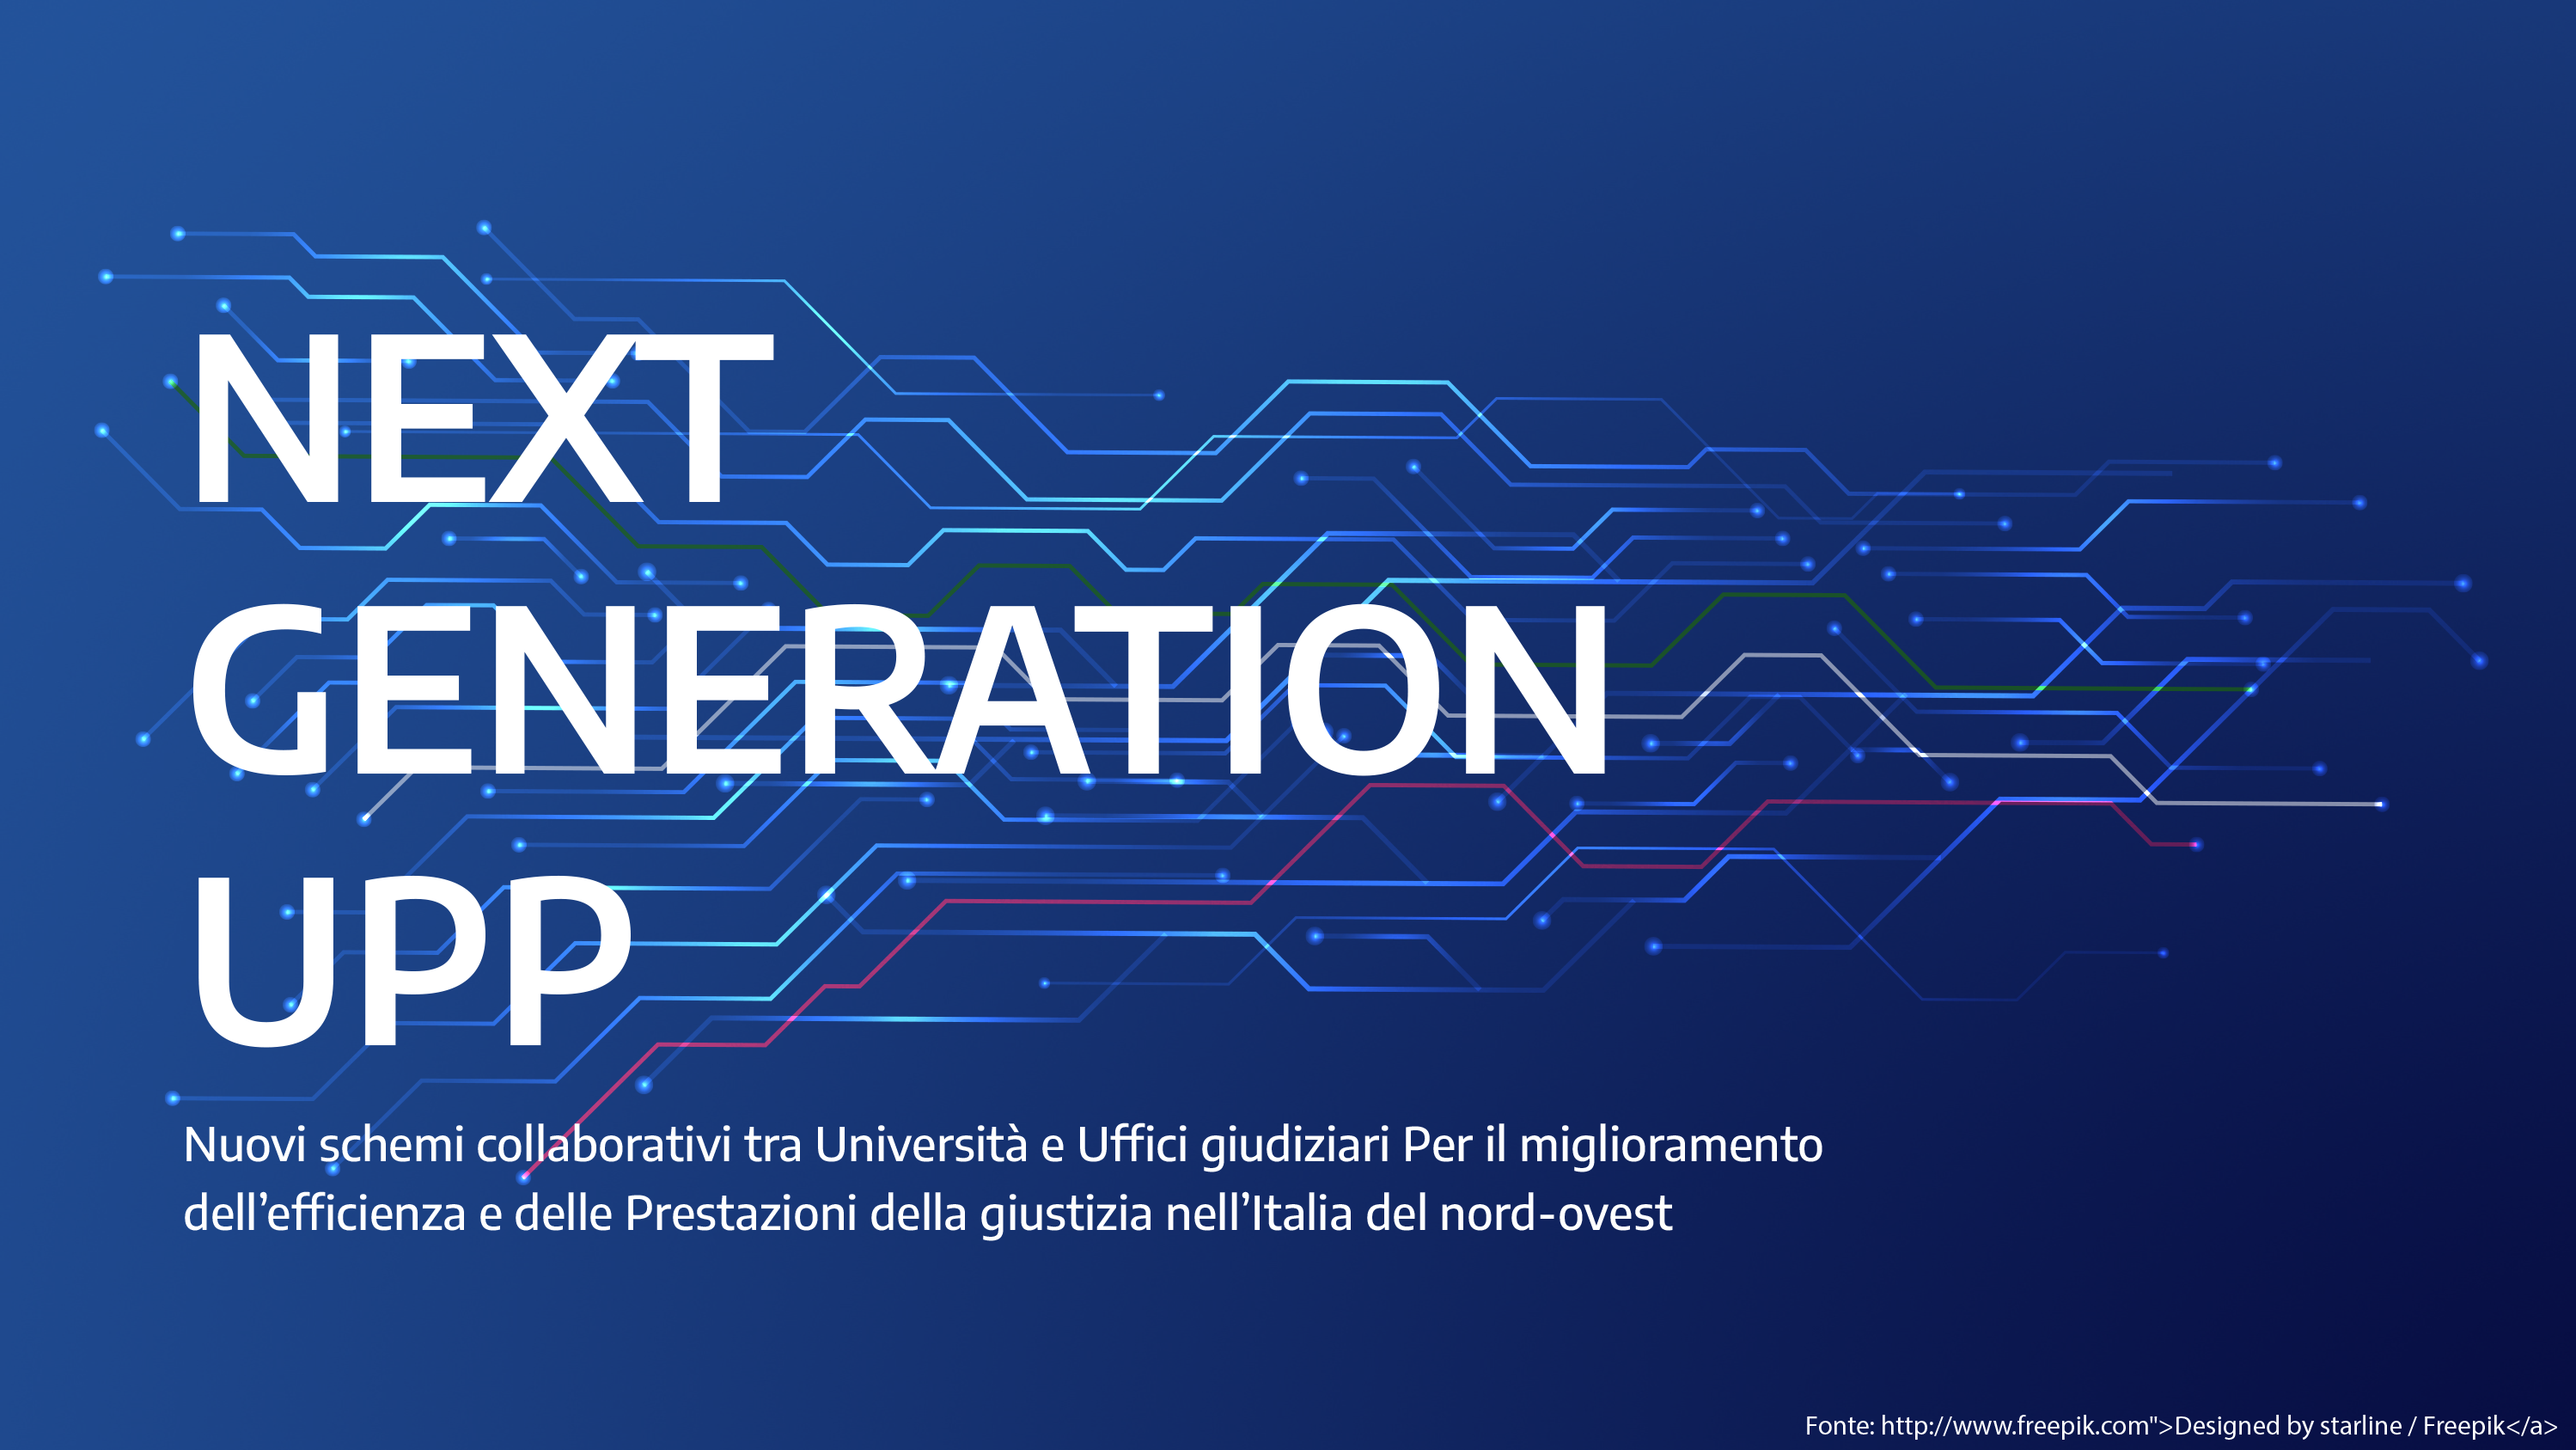 Next generation UPP